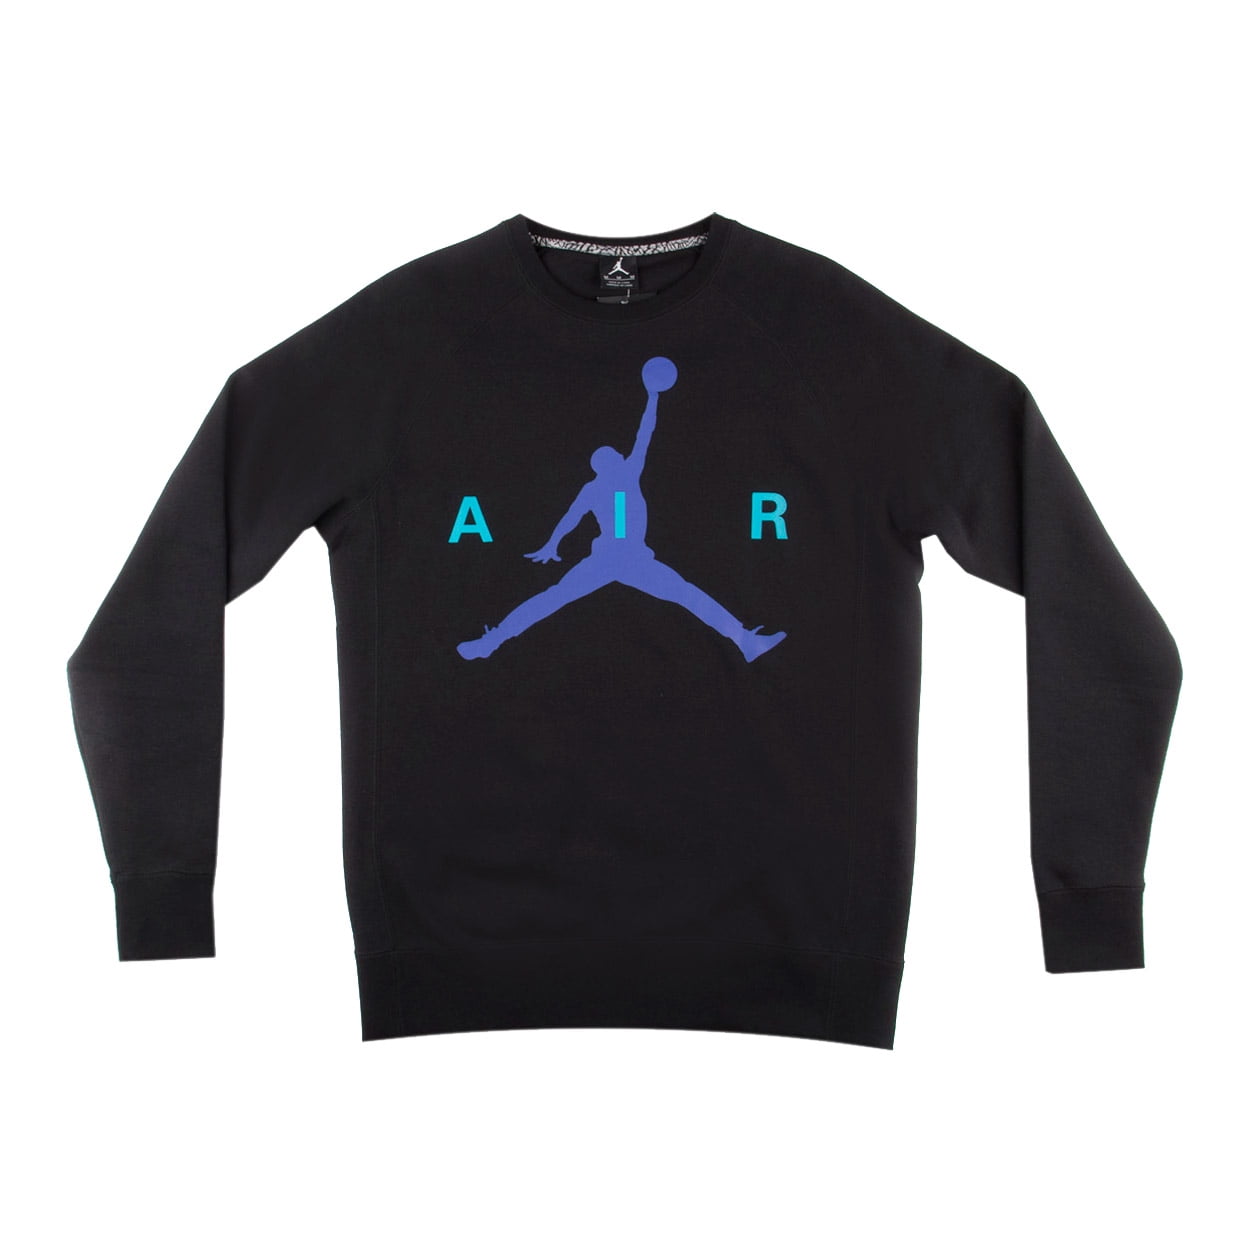 Nike Mens Air Jordan Brushed Graphic Sweatshirt Black/Concord Grape ...